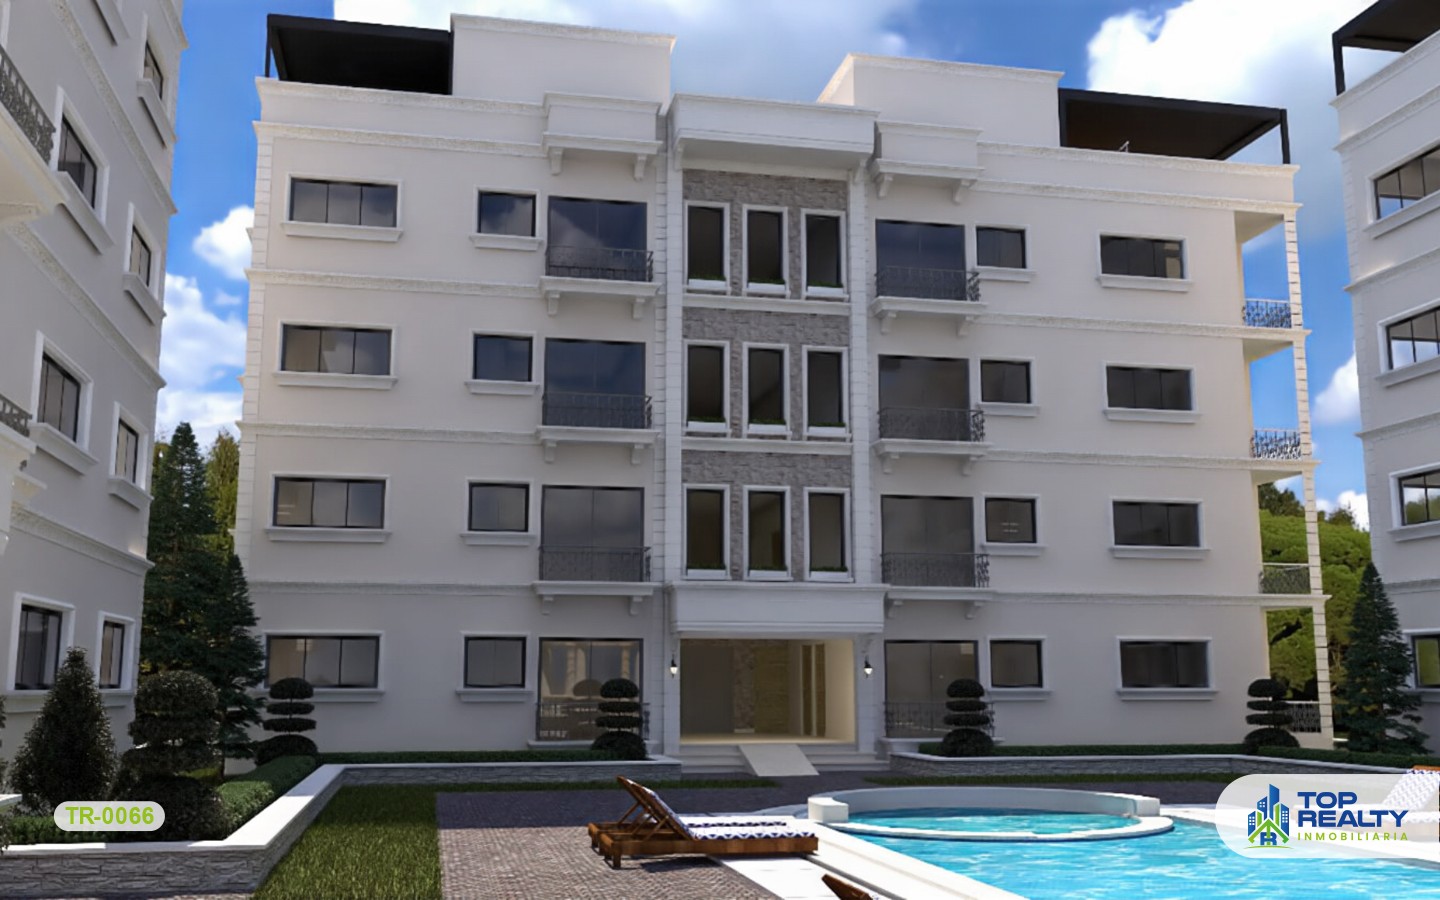 apartamentos - TR-0066: Revolucionario proyecto de estilo arquitectonico moderno en la Romana